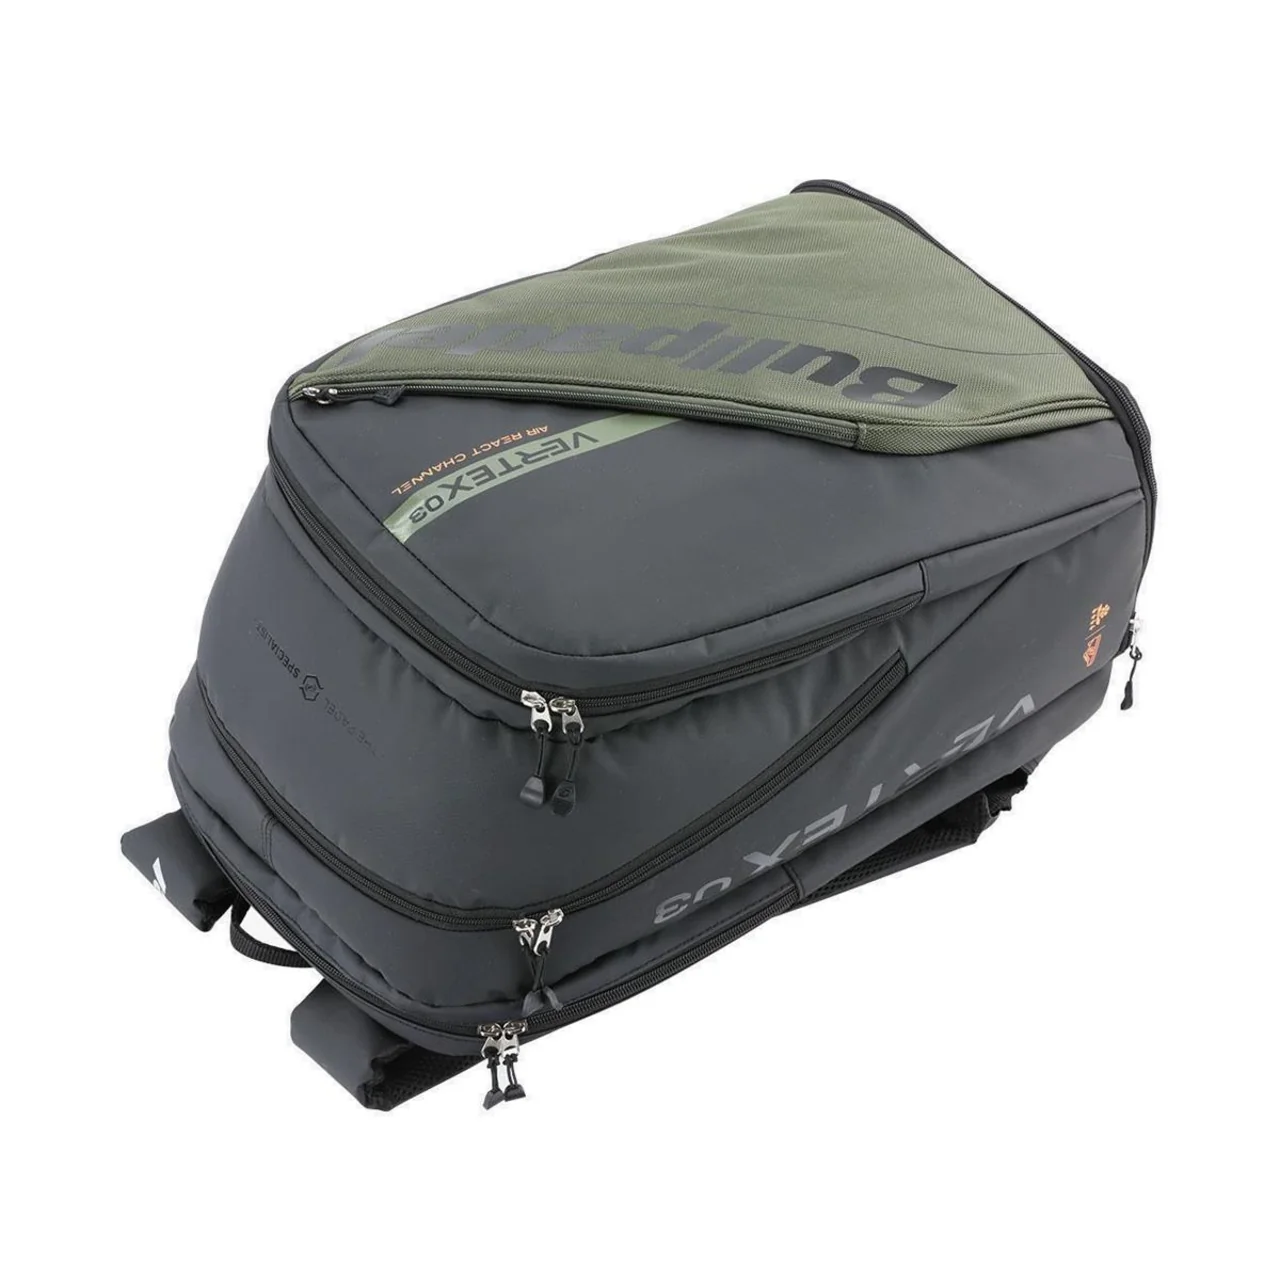 Bullpadel Vertex 03 Backpack Kaki 2023